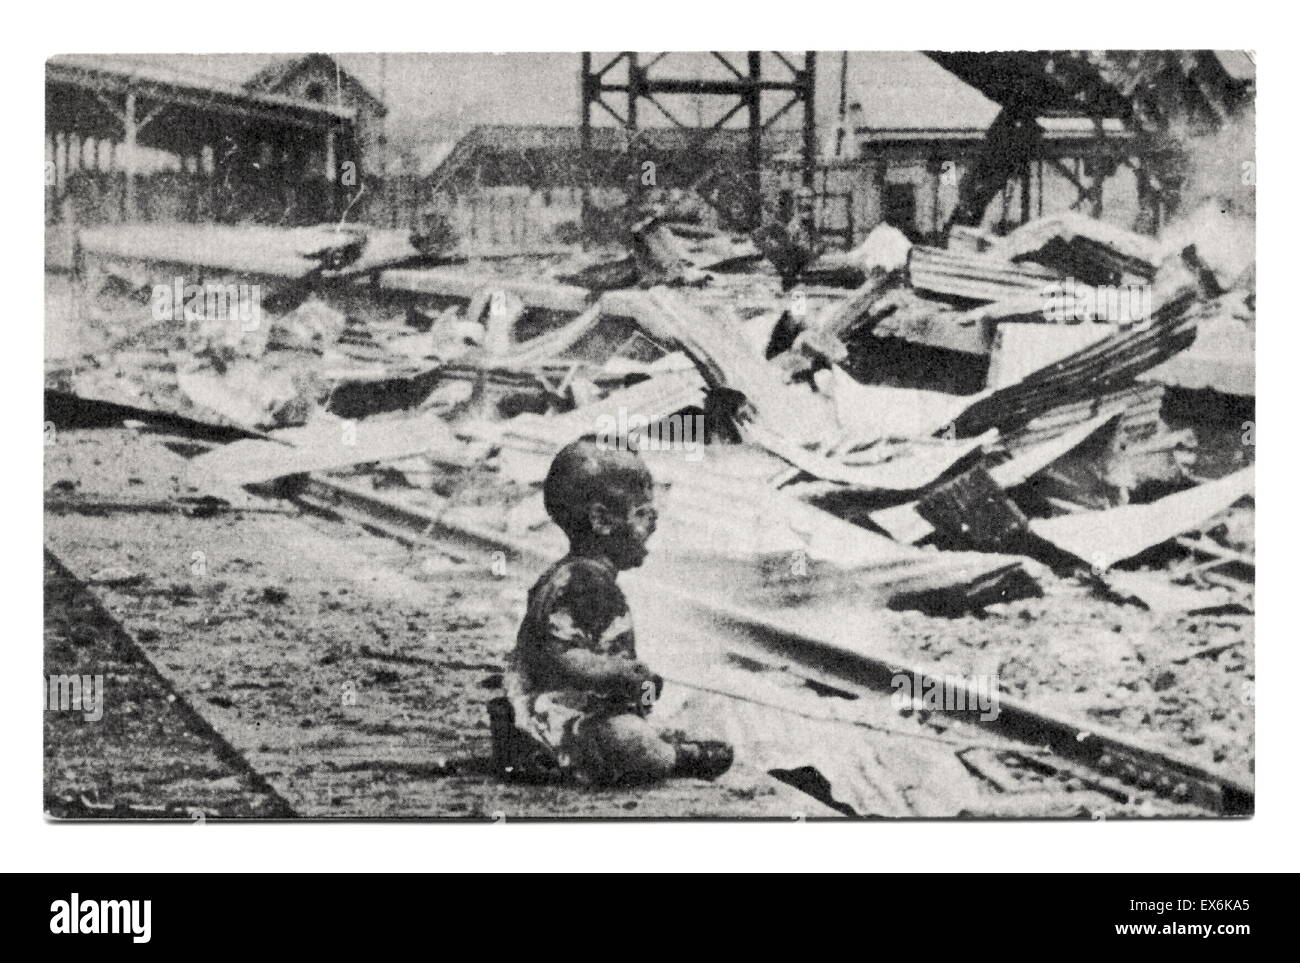 Zweiten Sino-japanischen Krieg 1937 während eines Bombenangriffs, bombardierten die Japaner eine chinesischen Zug-Station, die Frauen und Kinder untergebracht. Dieses Baby überlebt, obwohl er verletzt. Stockfoto